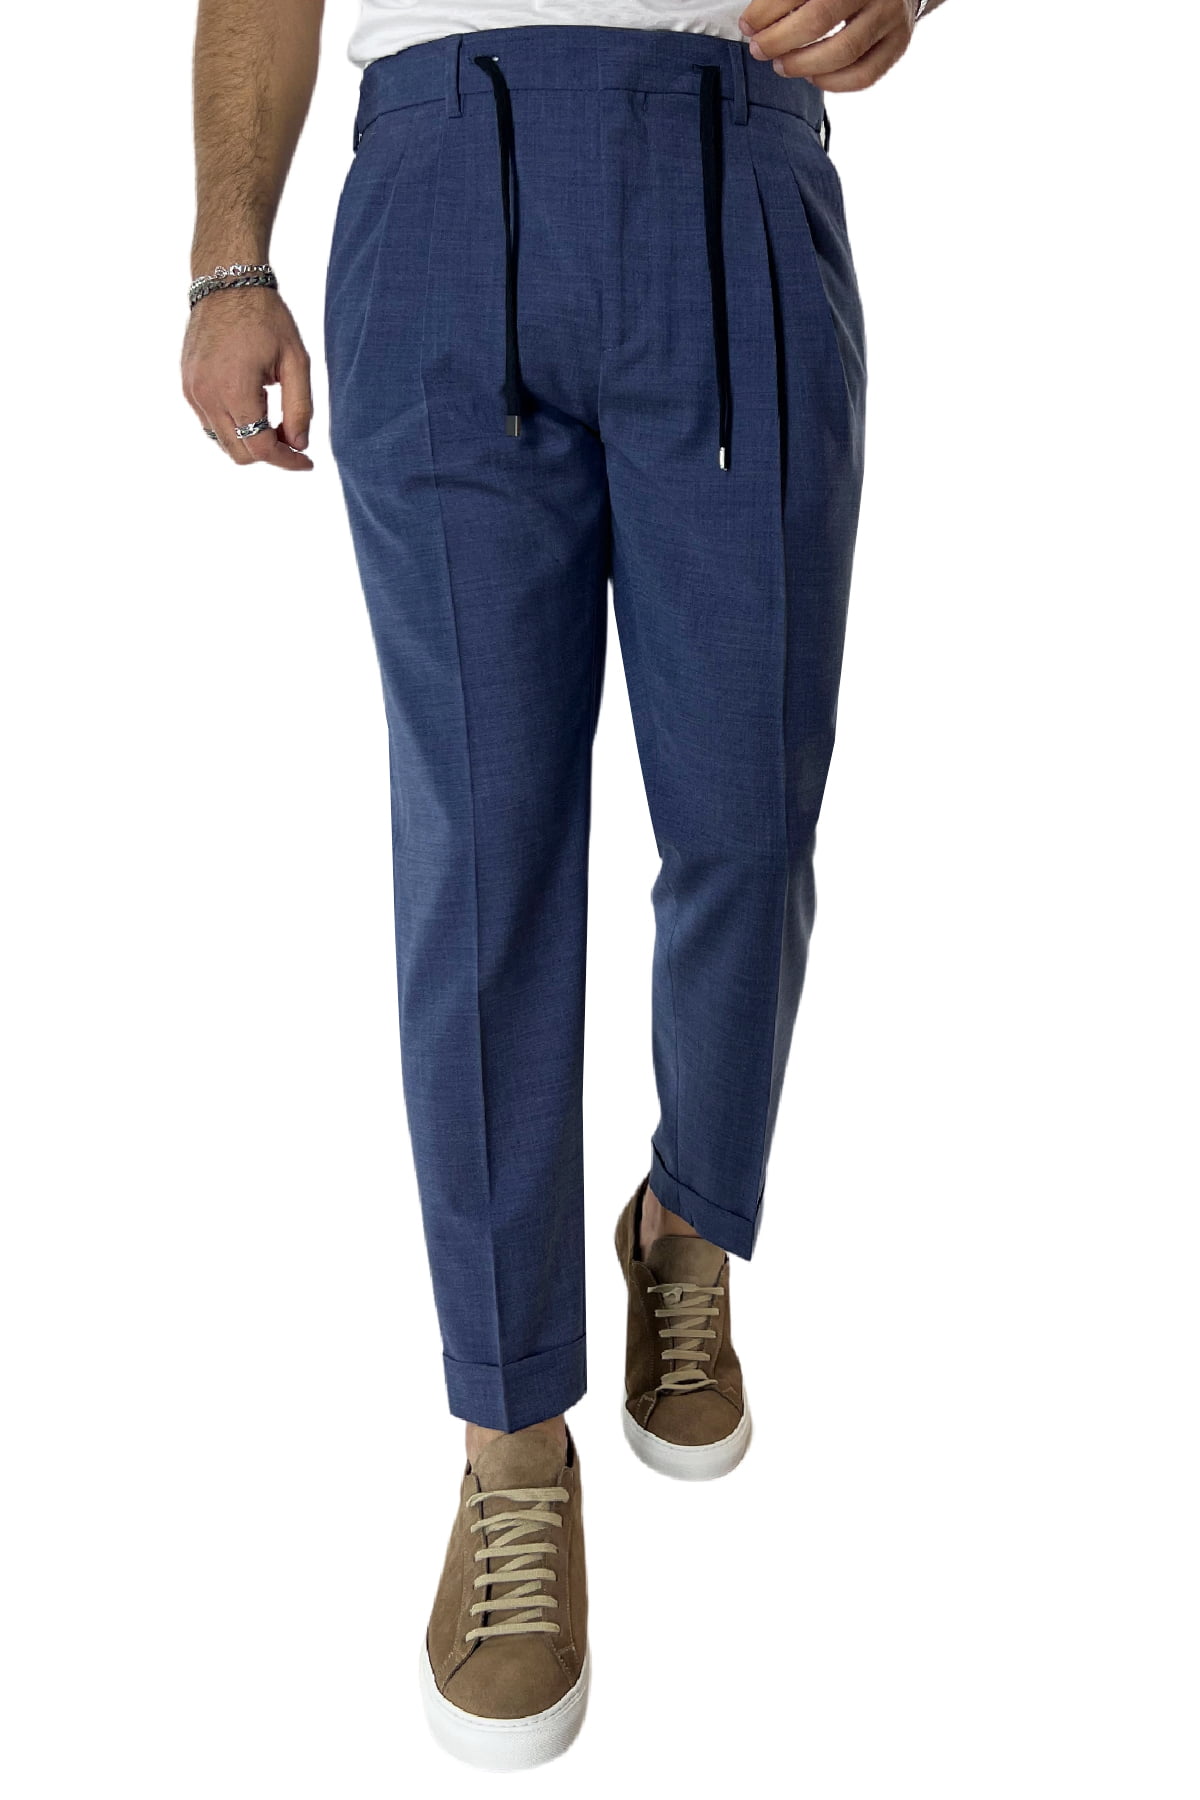 Pantalaccio uomo color denim in fresco lana tasca america con doppia pence e laccio in vita risvolto 4cm